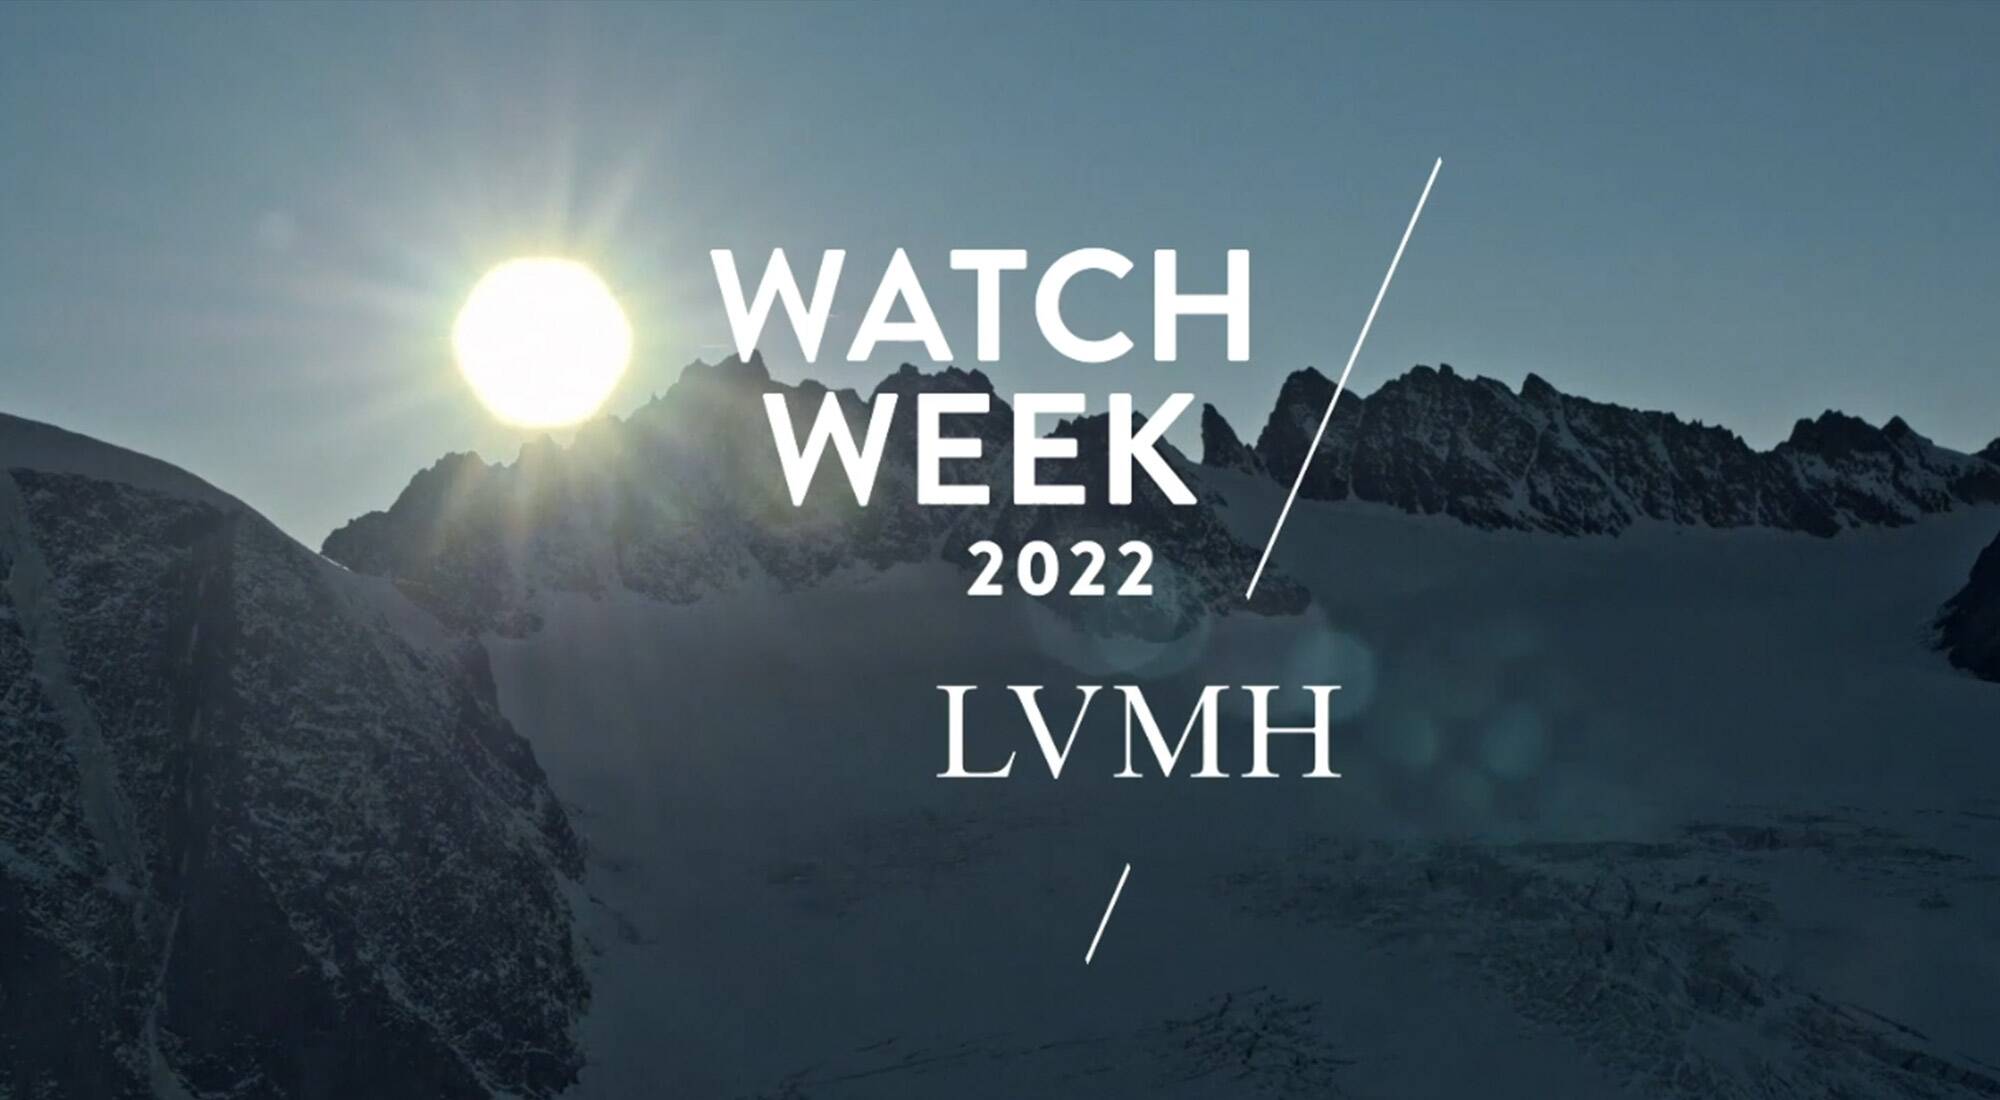 LVMH Watch Week 2021 - Register